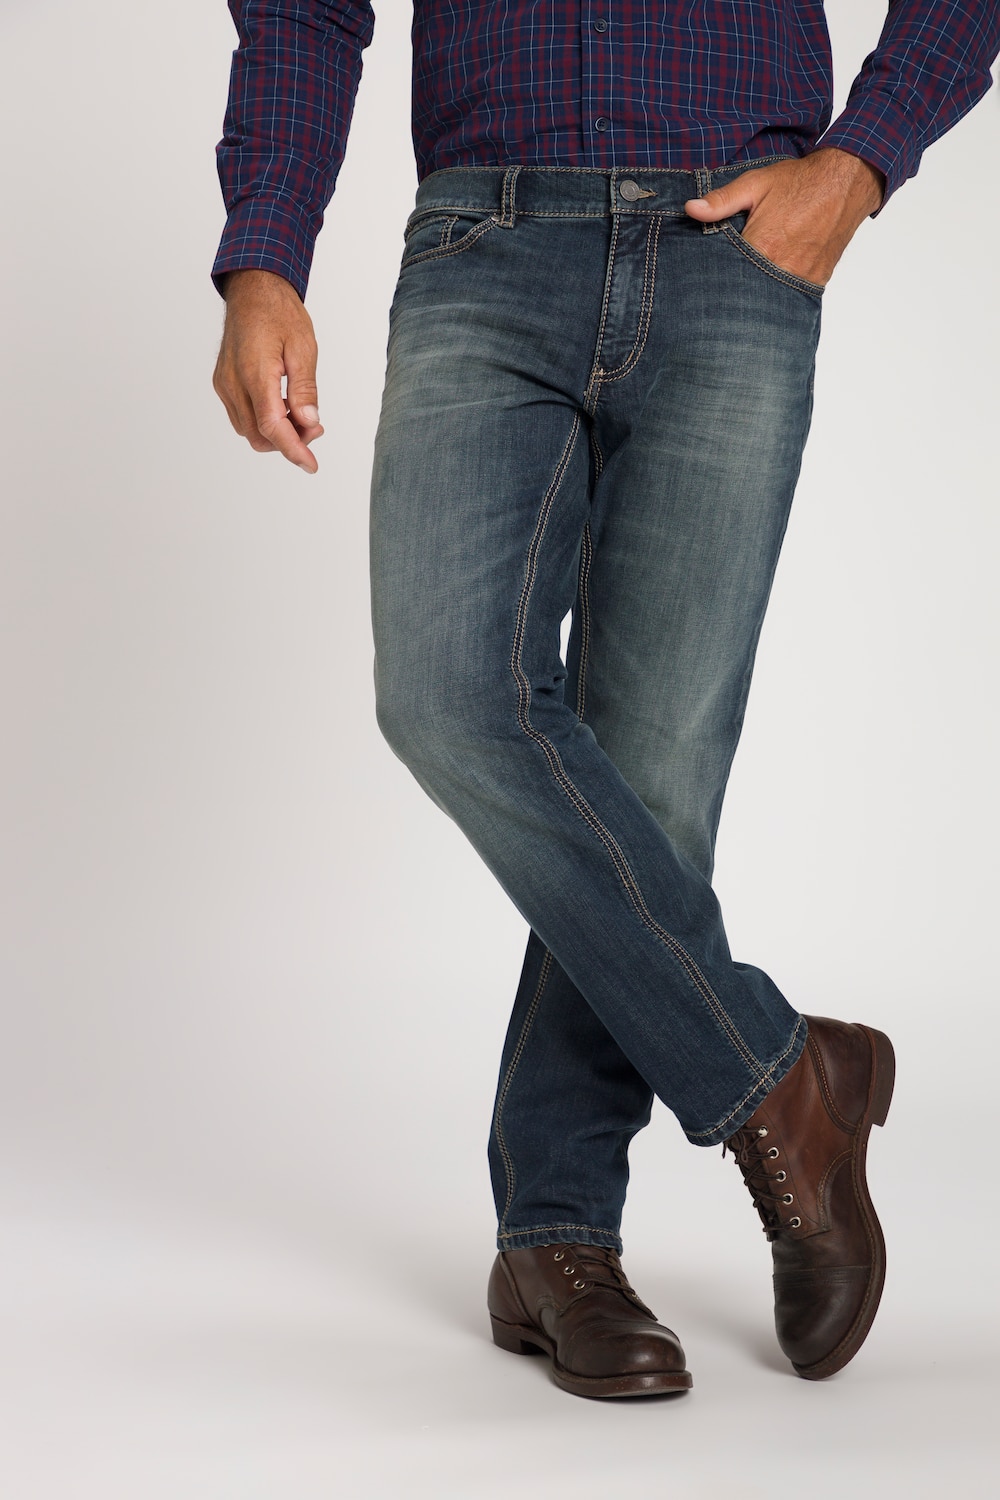 JP 1880 Herren große Größen bis 66, Superstretch-Jeans, 5-Pocket im Used-Look, Straight Fit, Destroyed Blue Used 58 711564 94-58